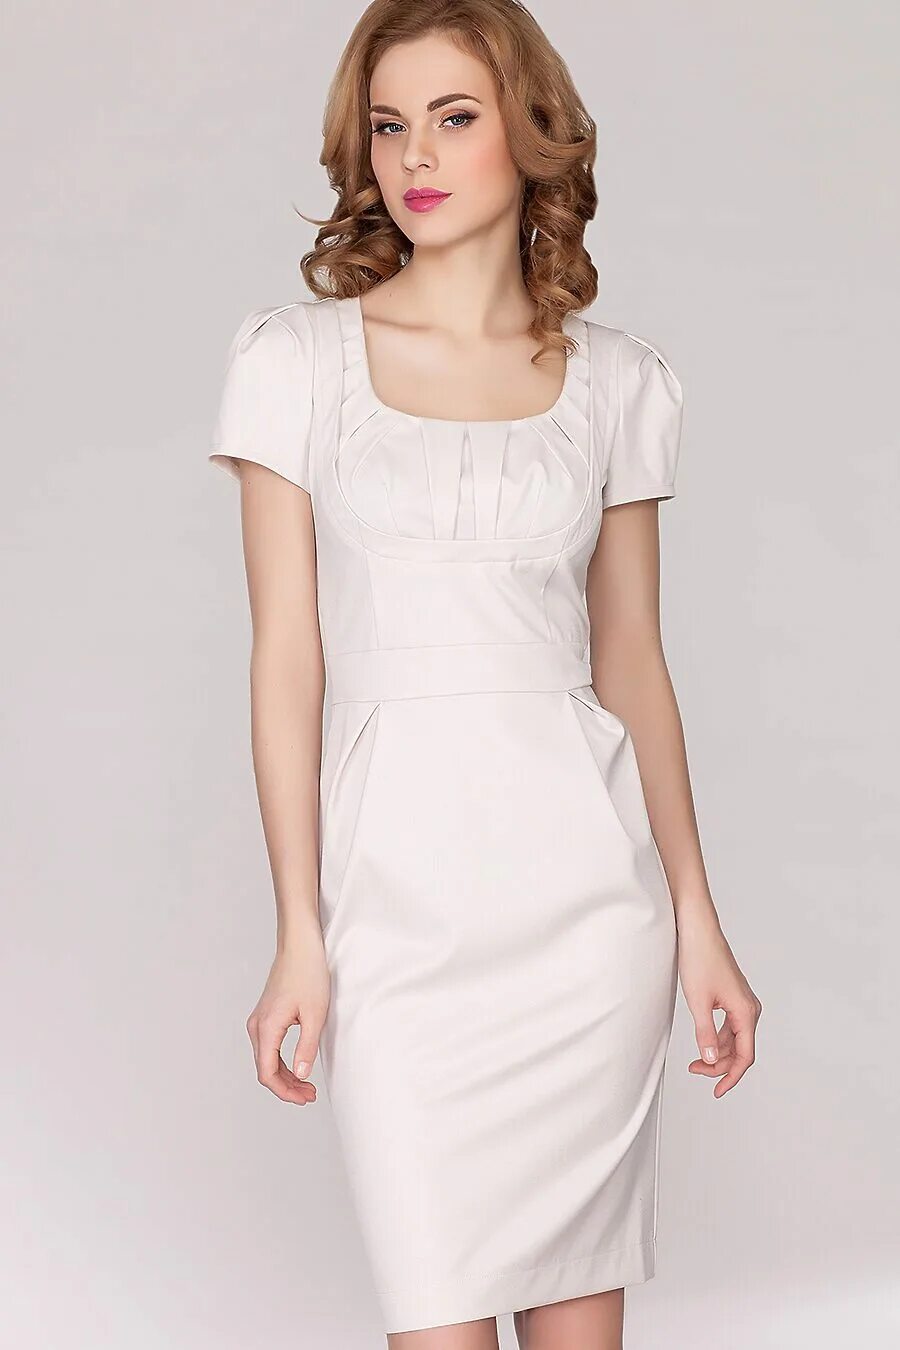 Caprice платье Elmira. Классическое платье. Белое платье классика. Классическое платье светлое. Купить платье классика